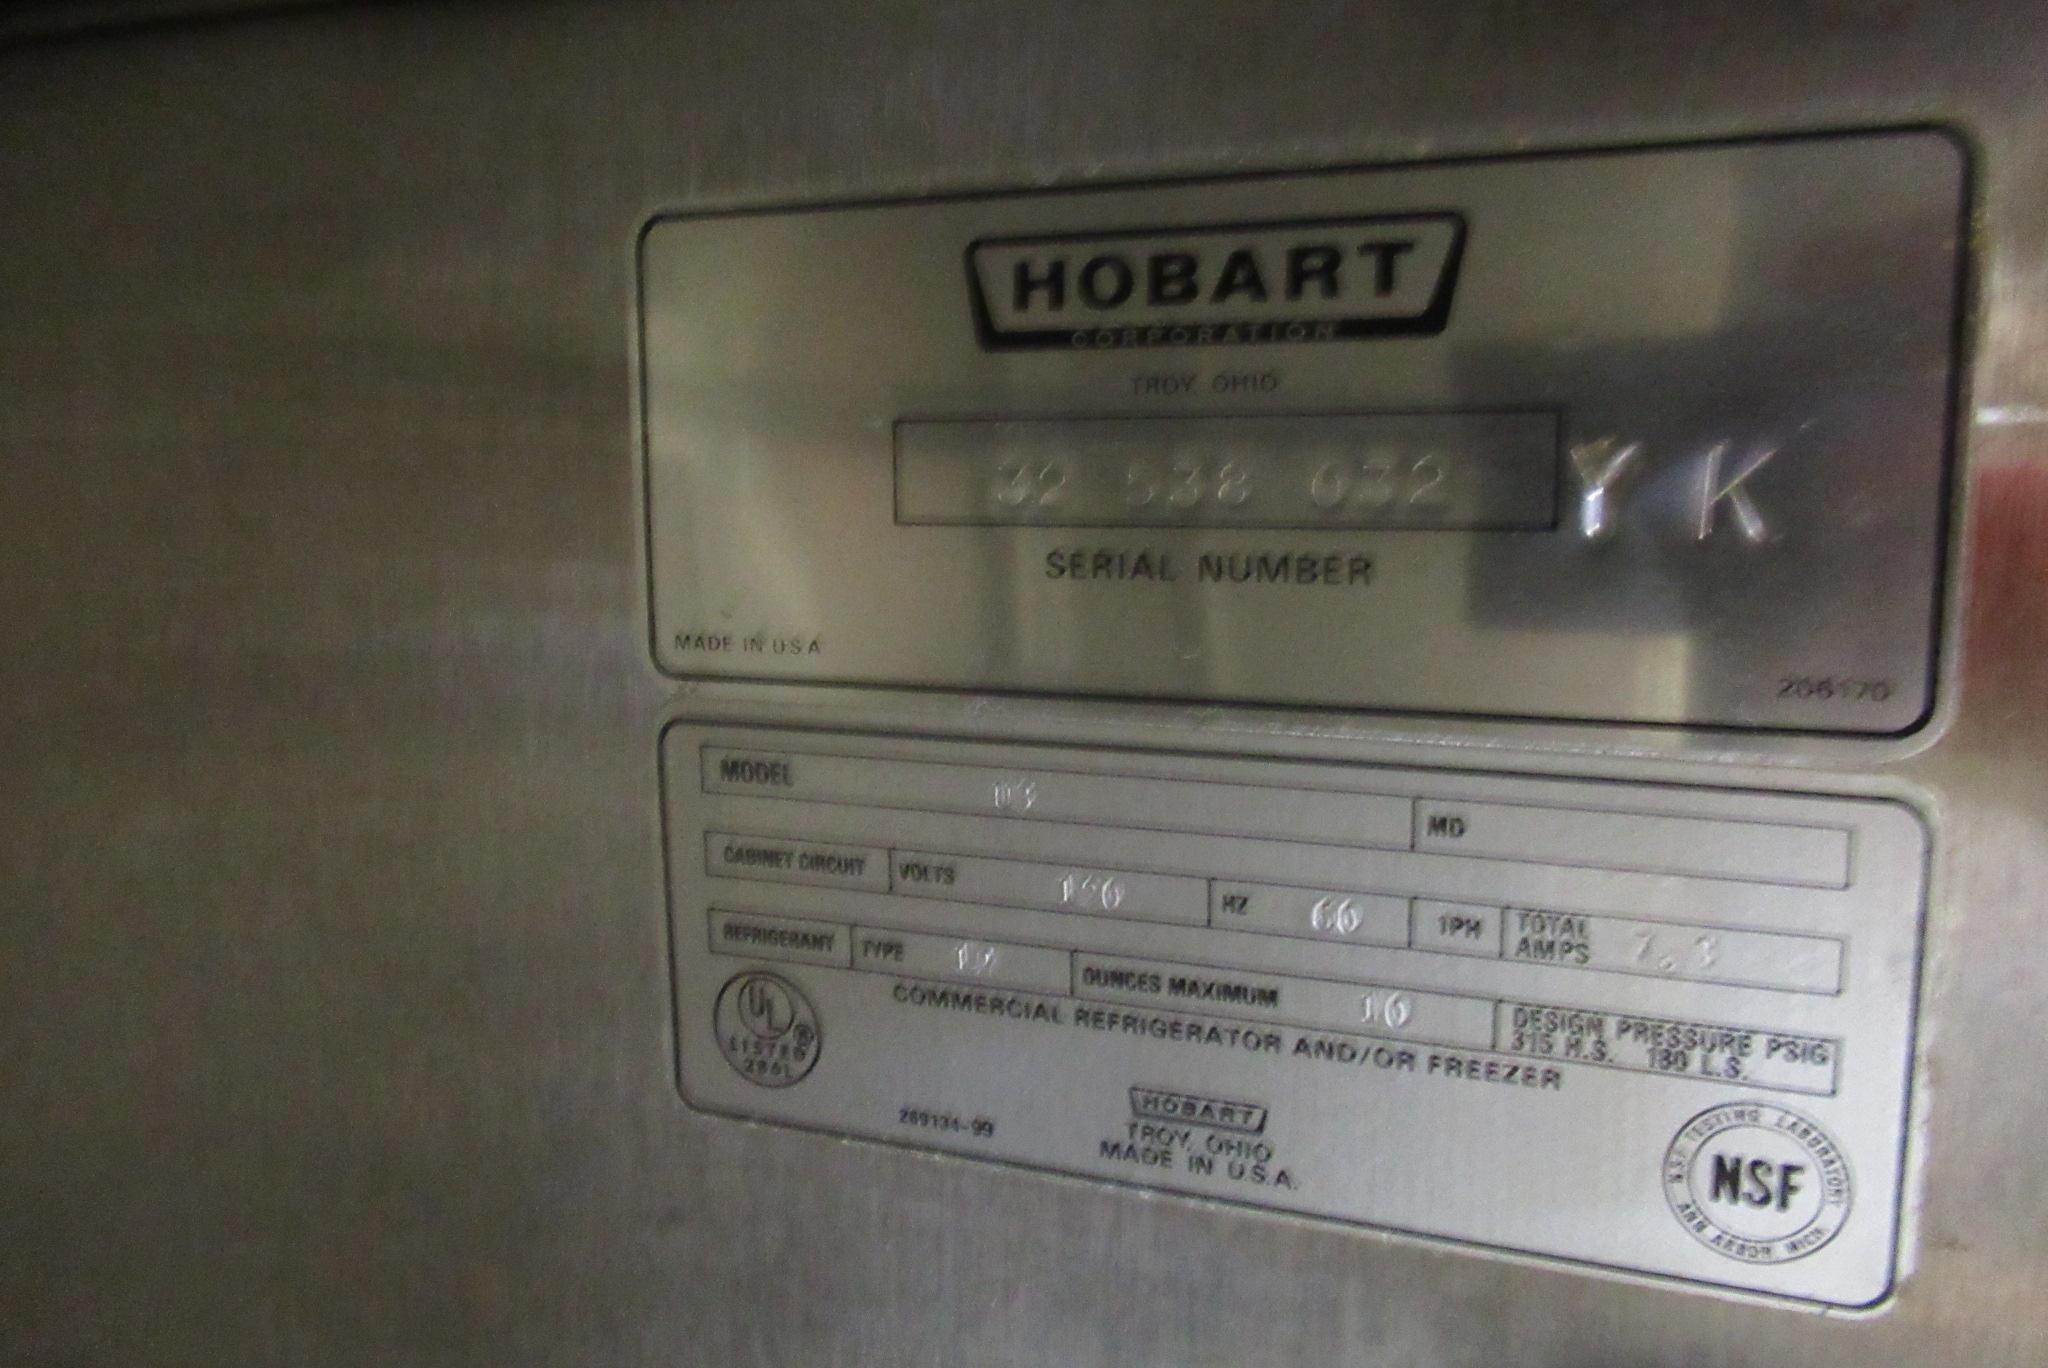 Hobart Refrigerated Prep Table, 8' 4", m/n U3, s/n 32538032